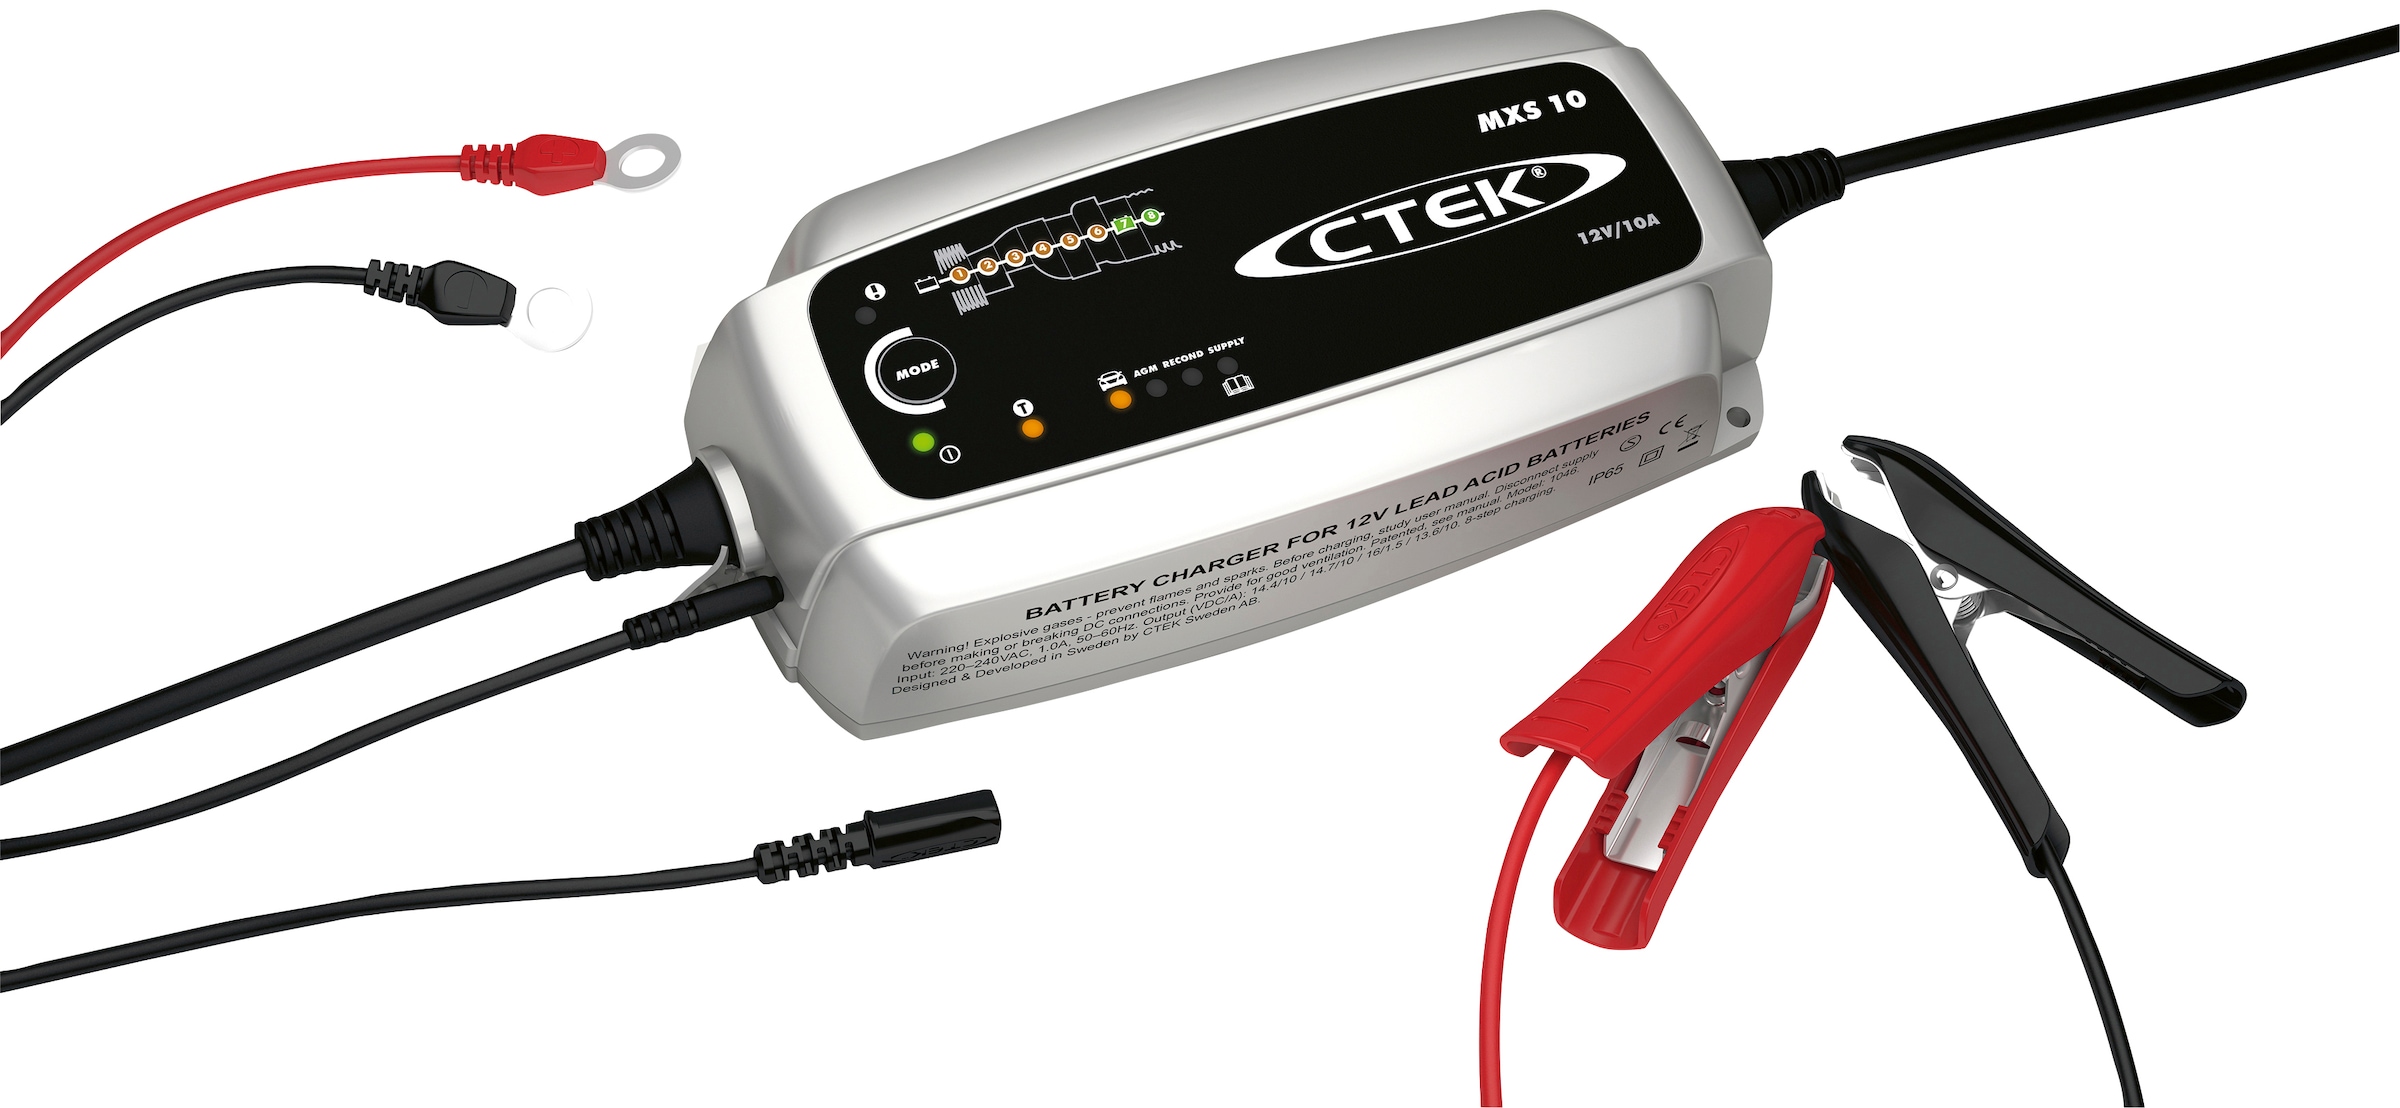 CTEK Batterie-Ladegerät »D250SE«, Temperatursensor zur Optimierung